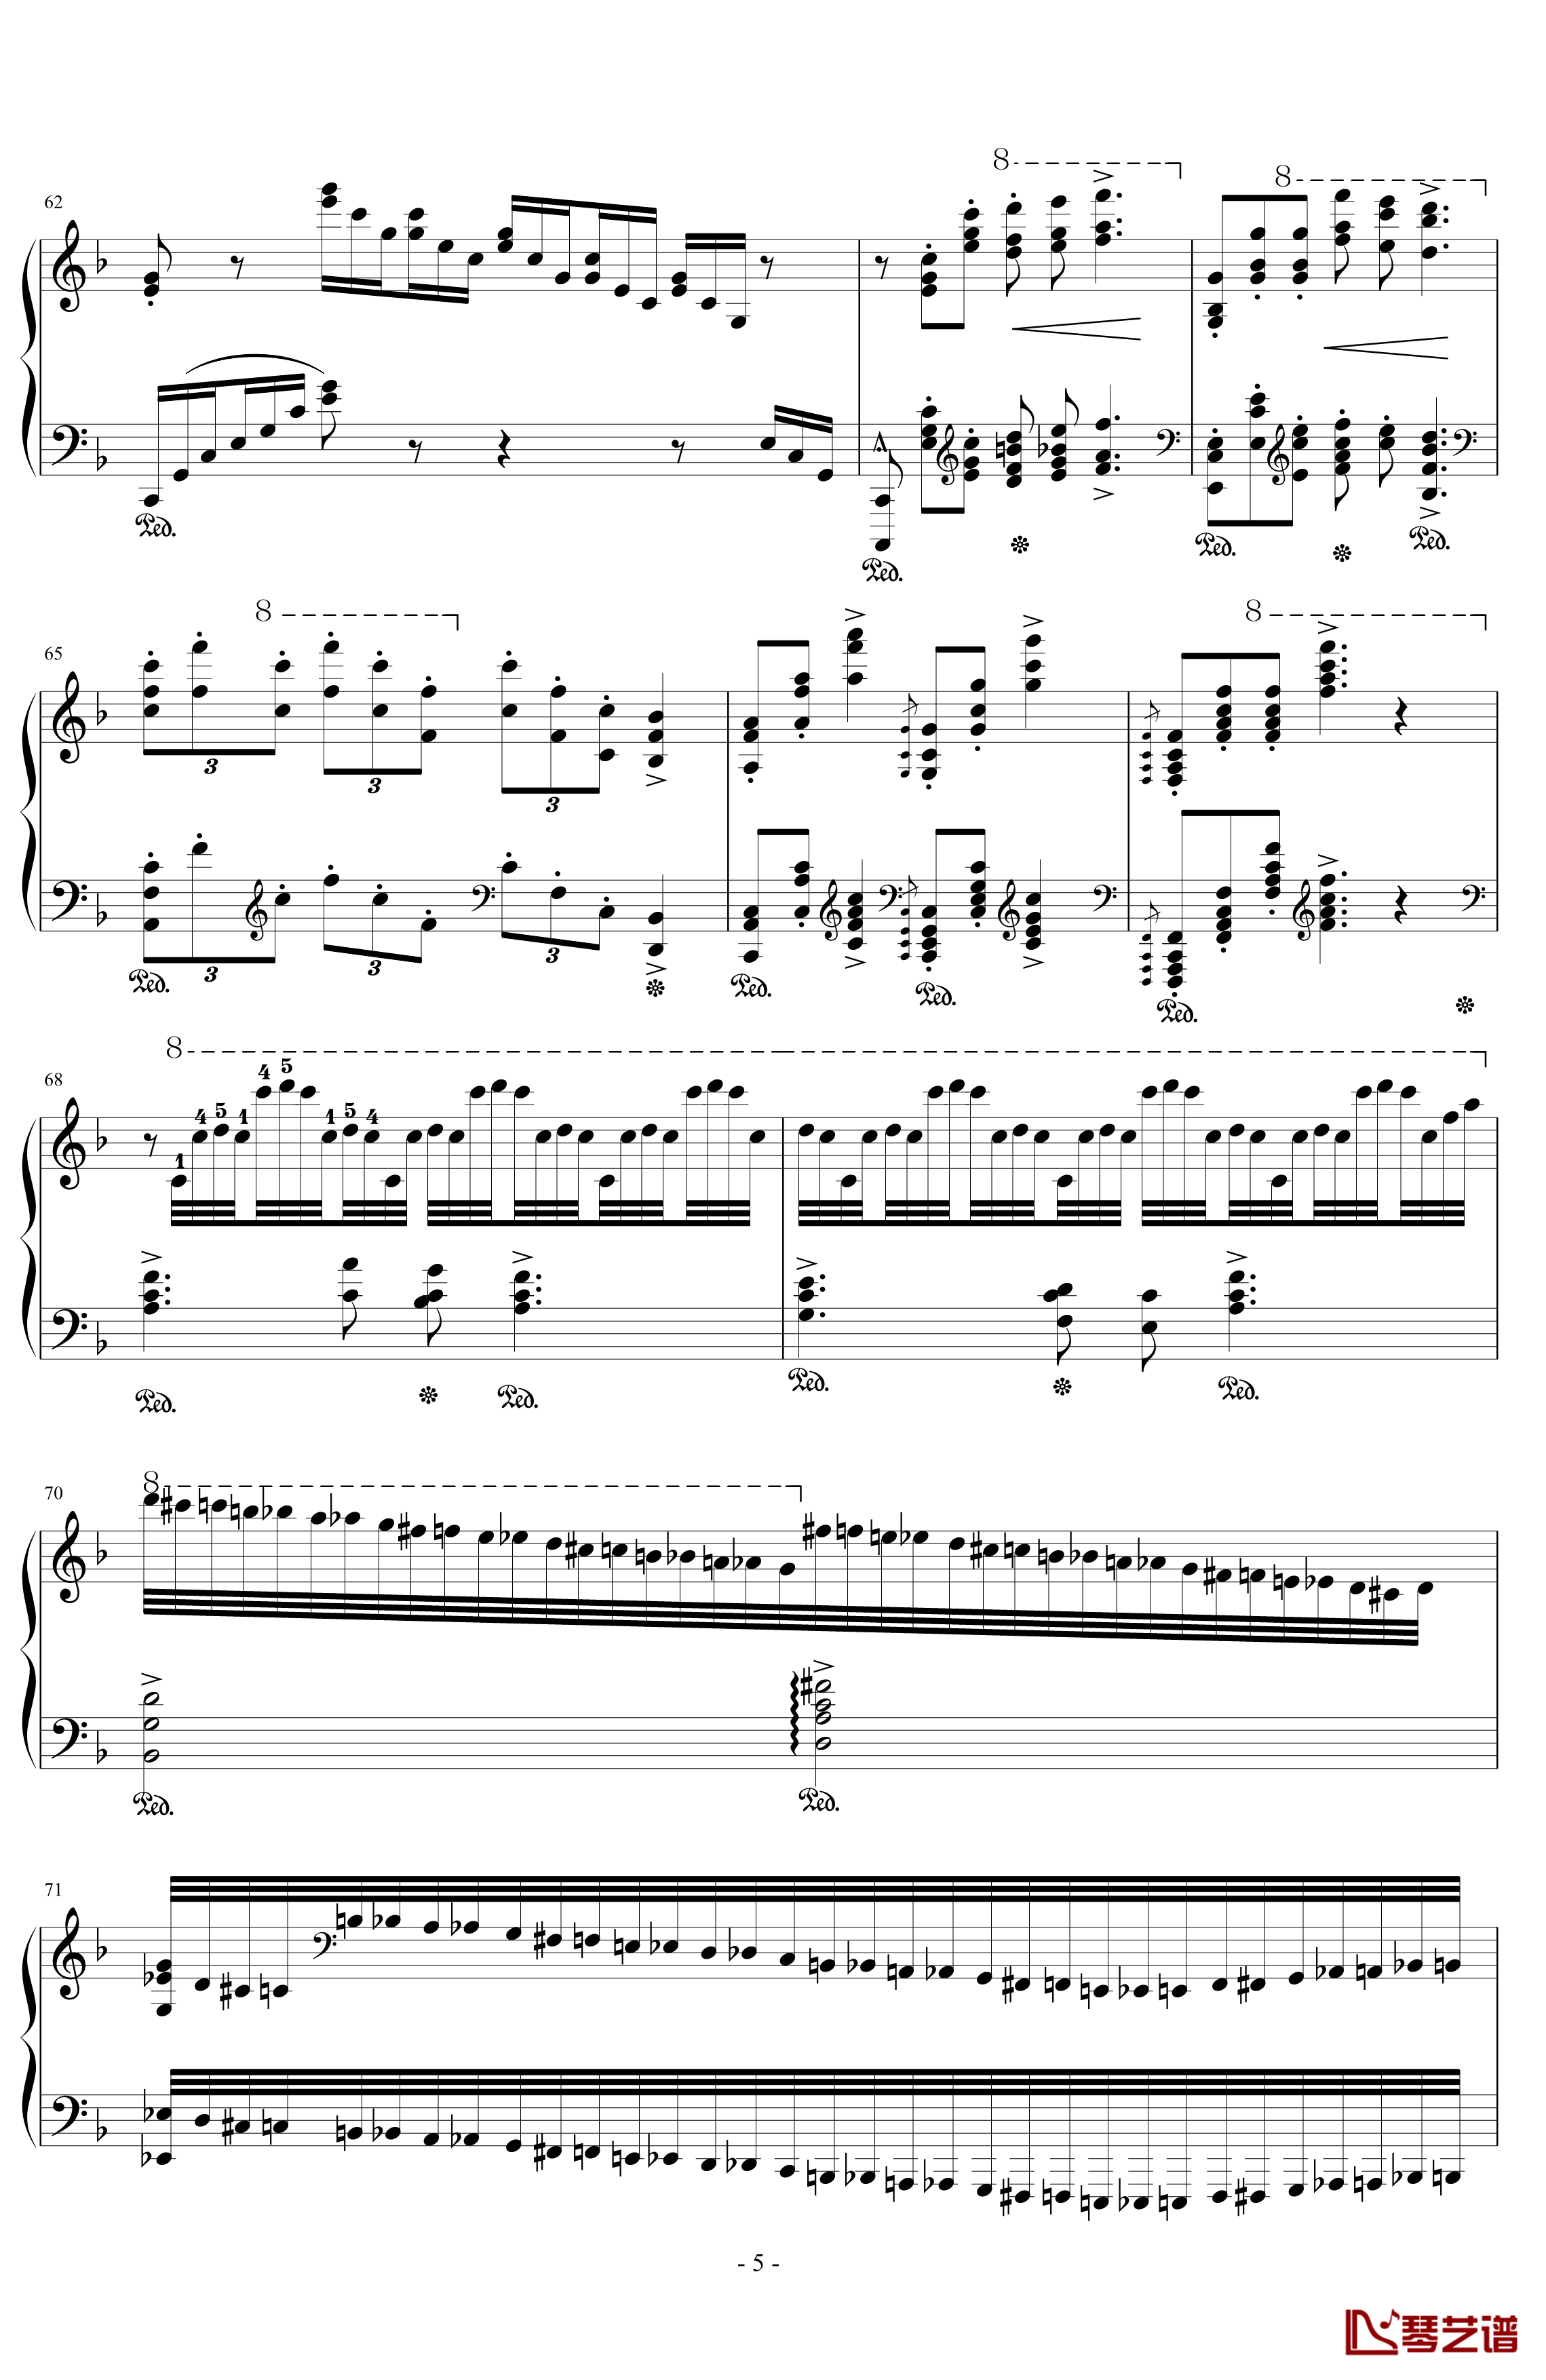 匈牙利狂想曲14号钢琴谱-李斯特的又一首宏大的作品-李斯特5